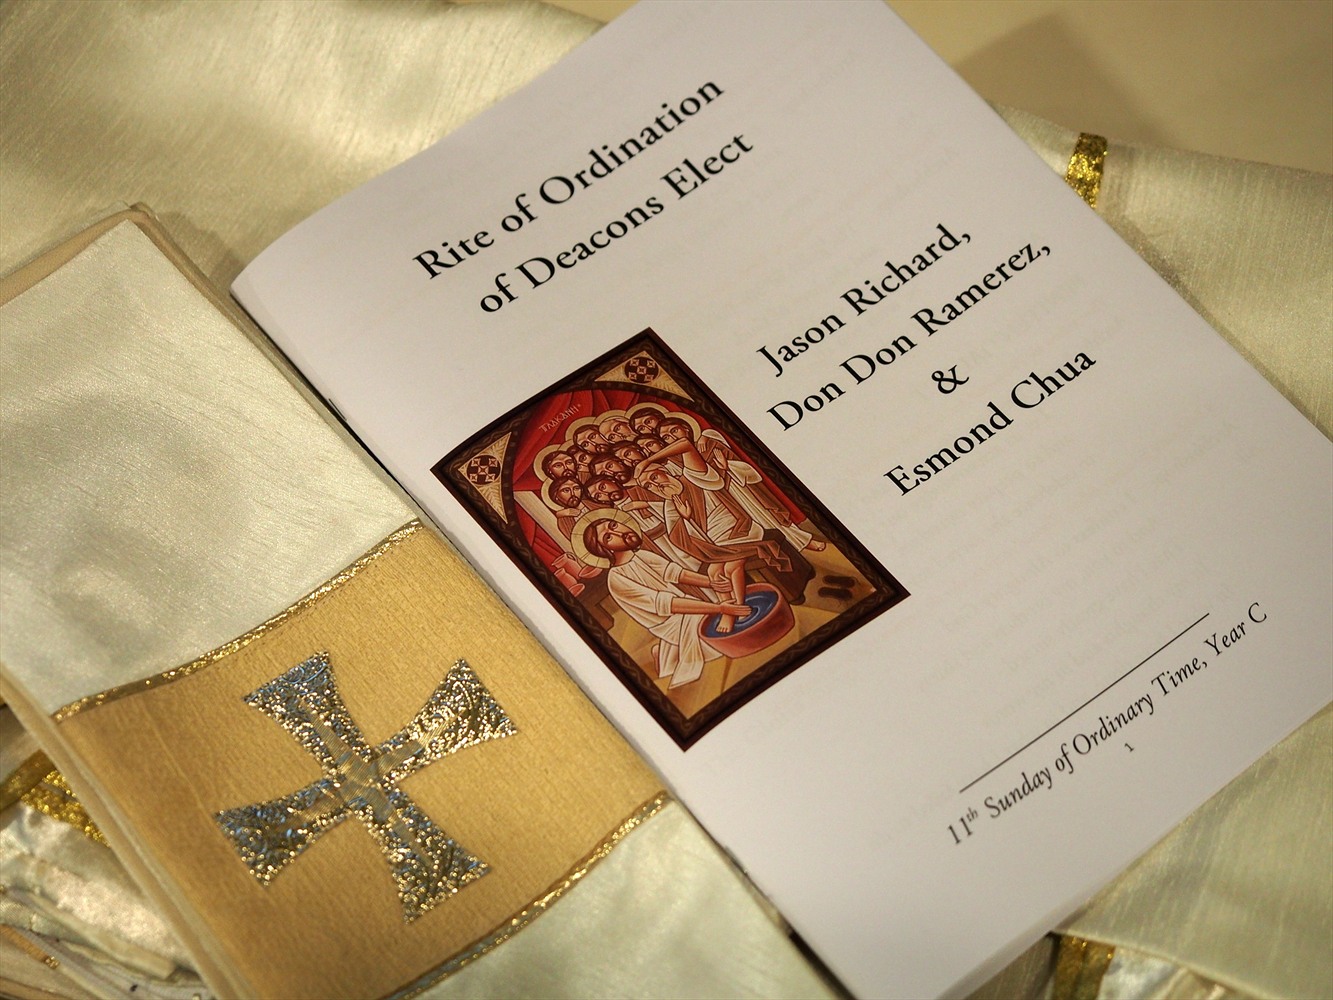 Ordination of Esmond as Deacon